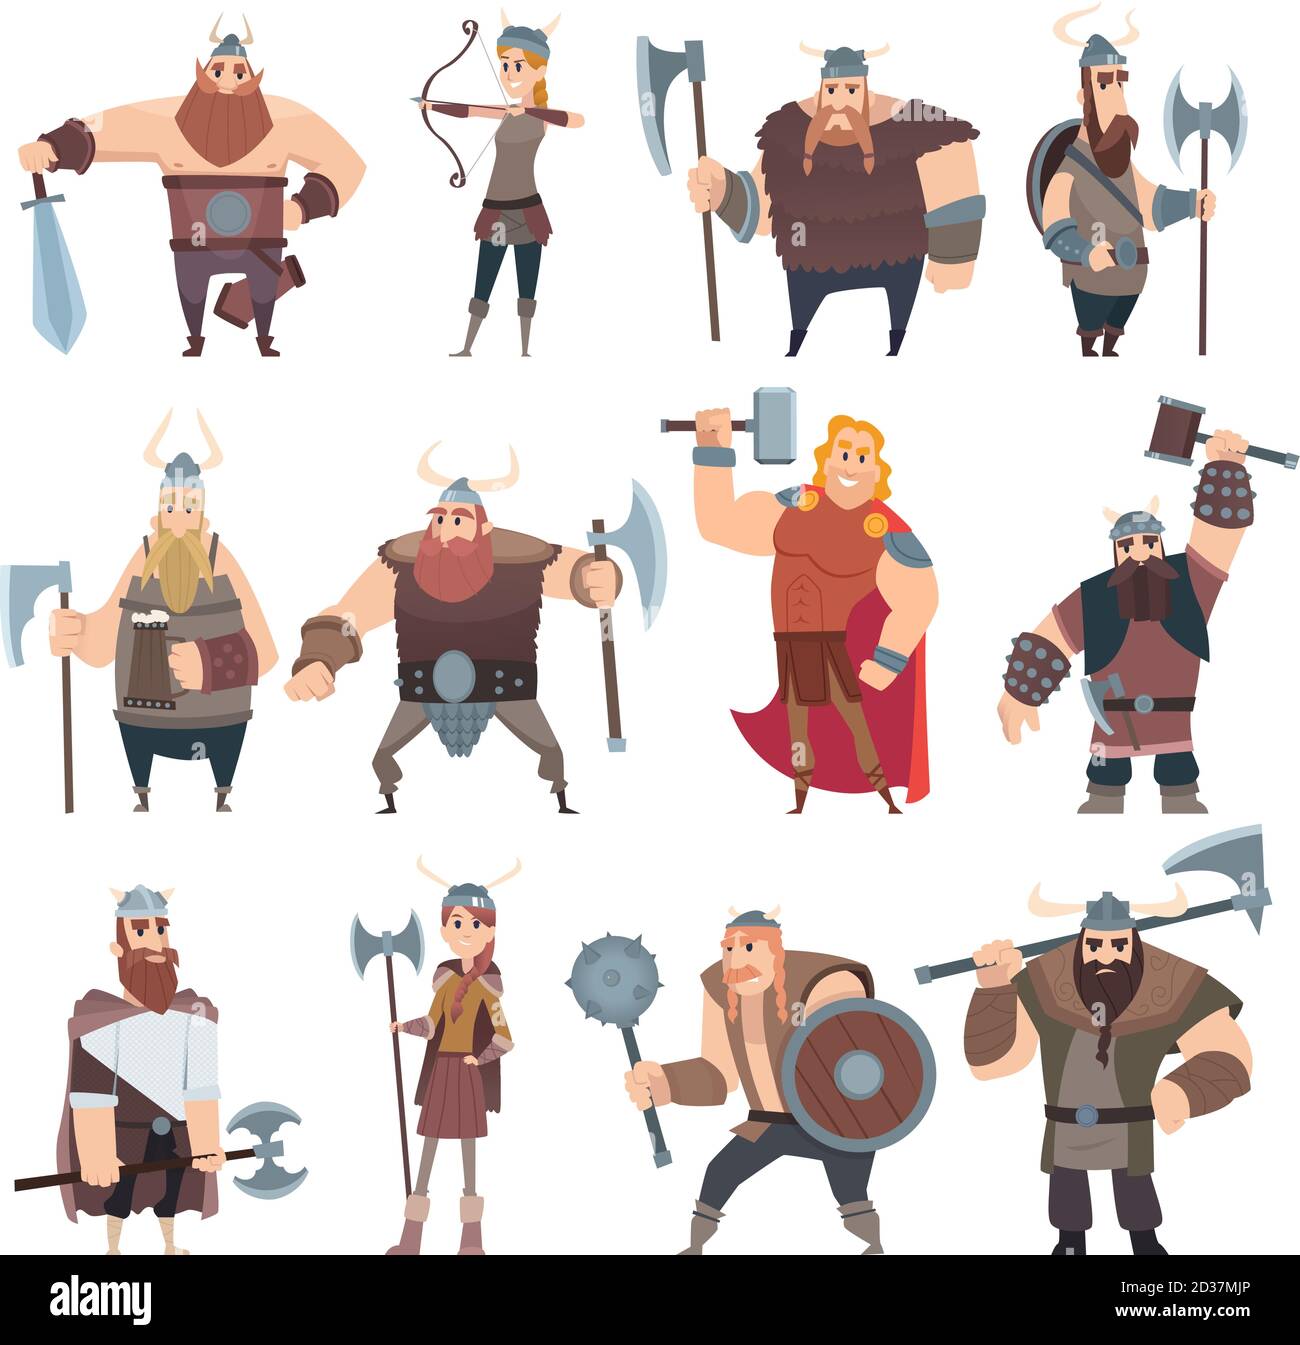 Dessin animé Viking. Caractères mythologiques scandinaves norway costume vikings Warrior illustrations vectorielles mâles et femelles Illustration de Vecteur